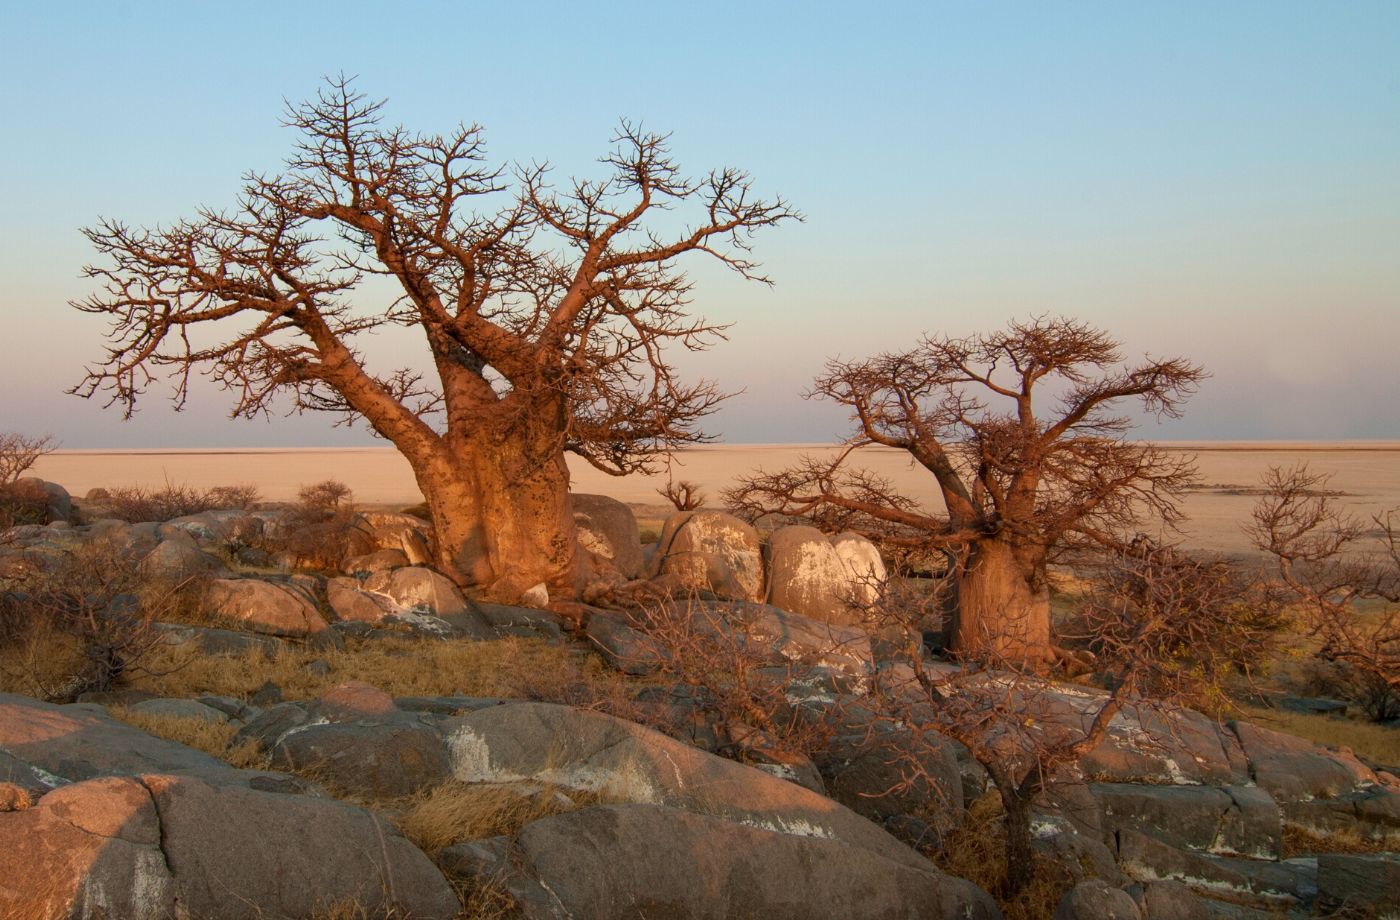 Botswana amazing trees biodiversity The wonder of Botswana 7 wonders seven wonders wonders of nature beautiful travel countries